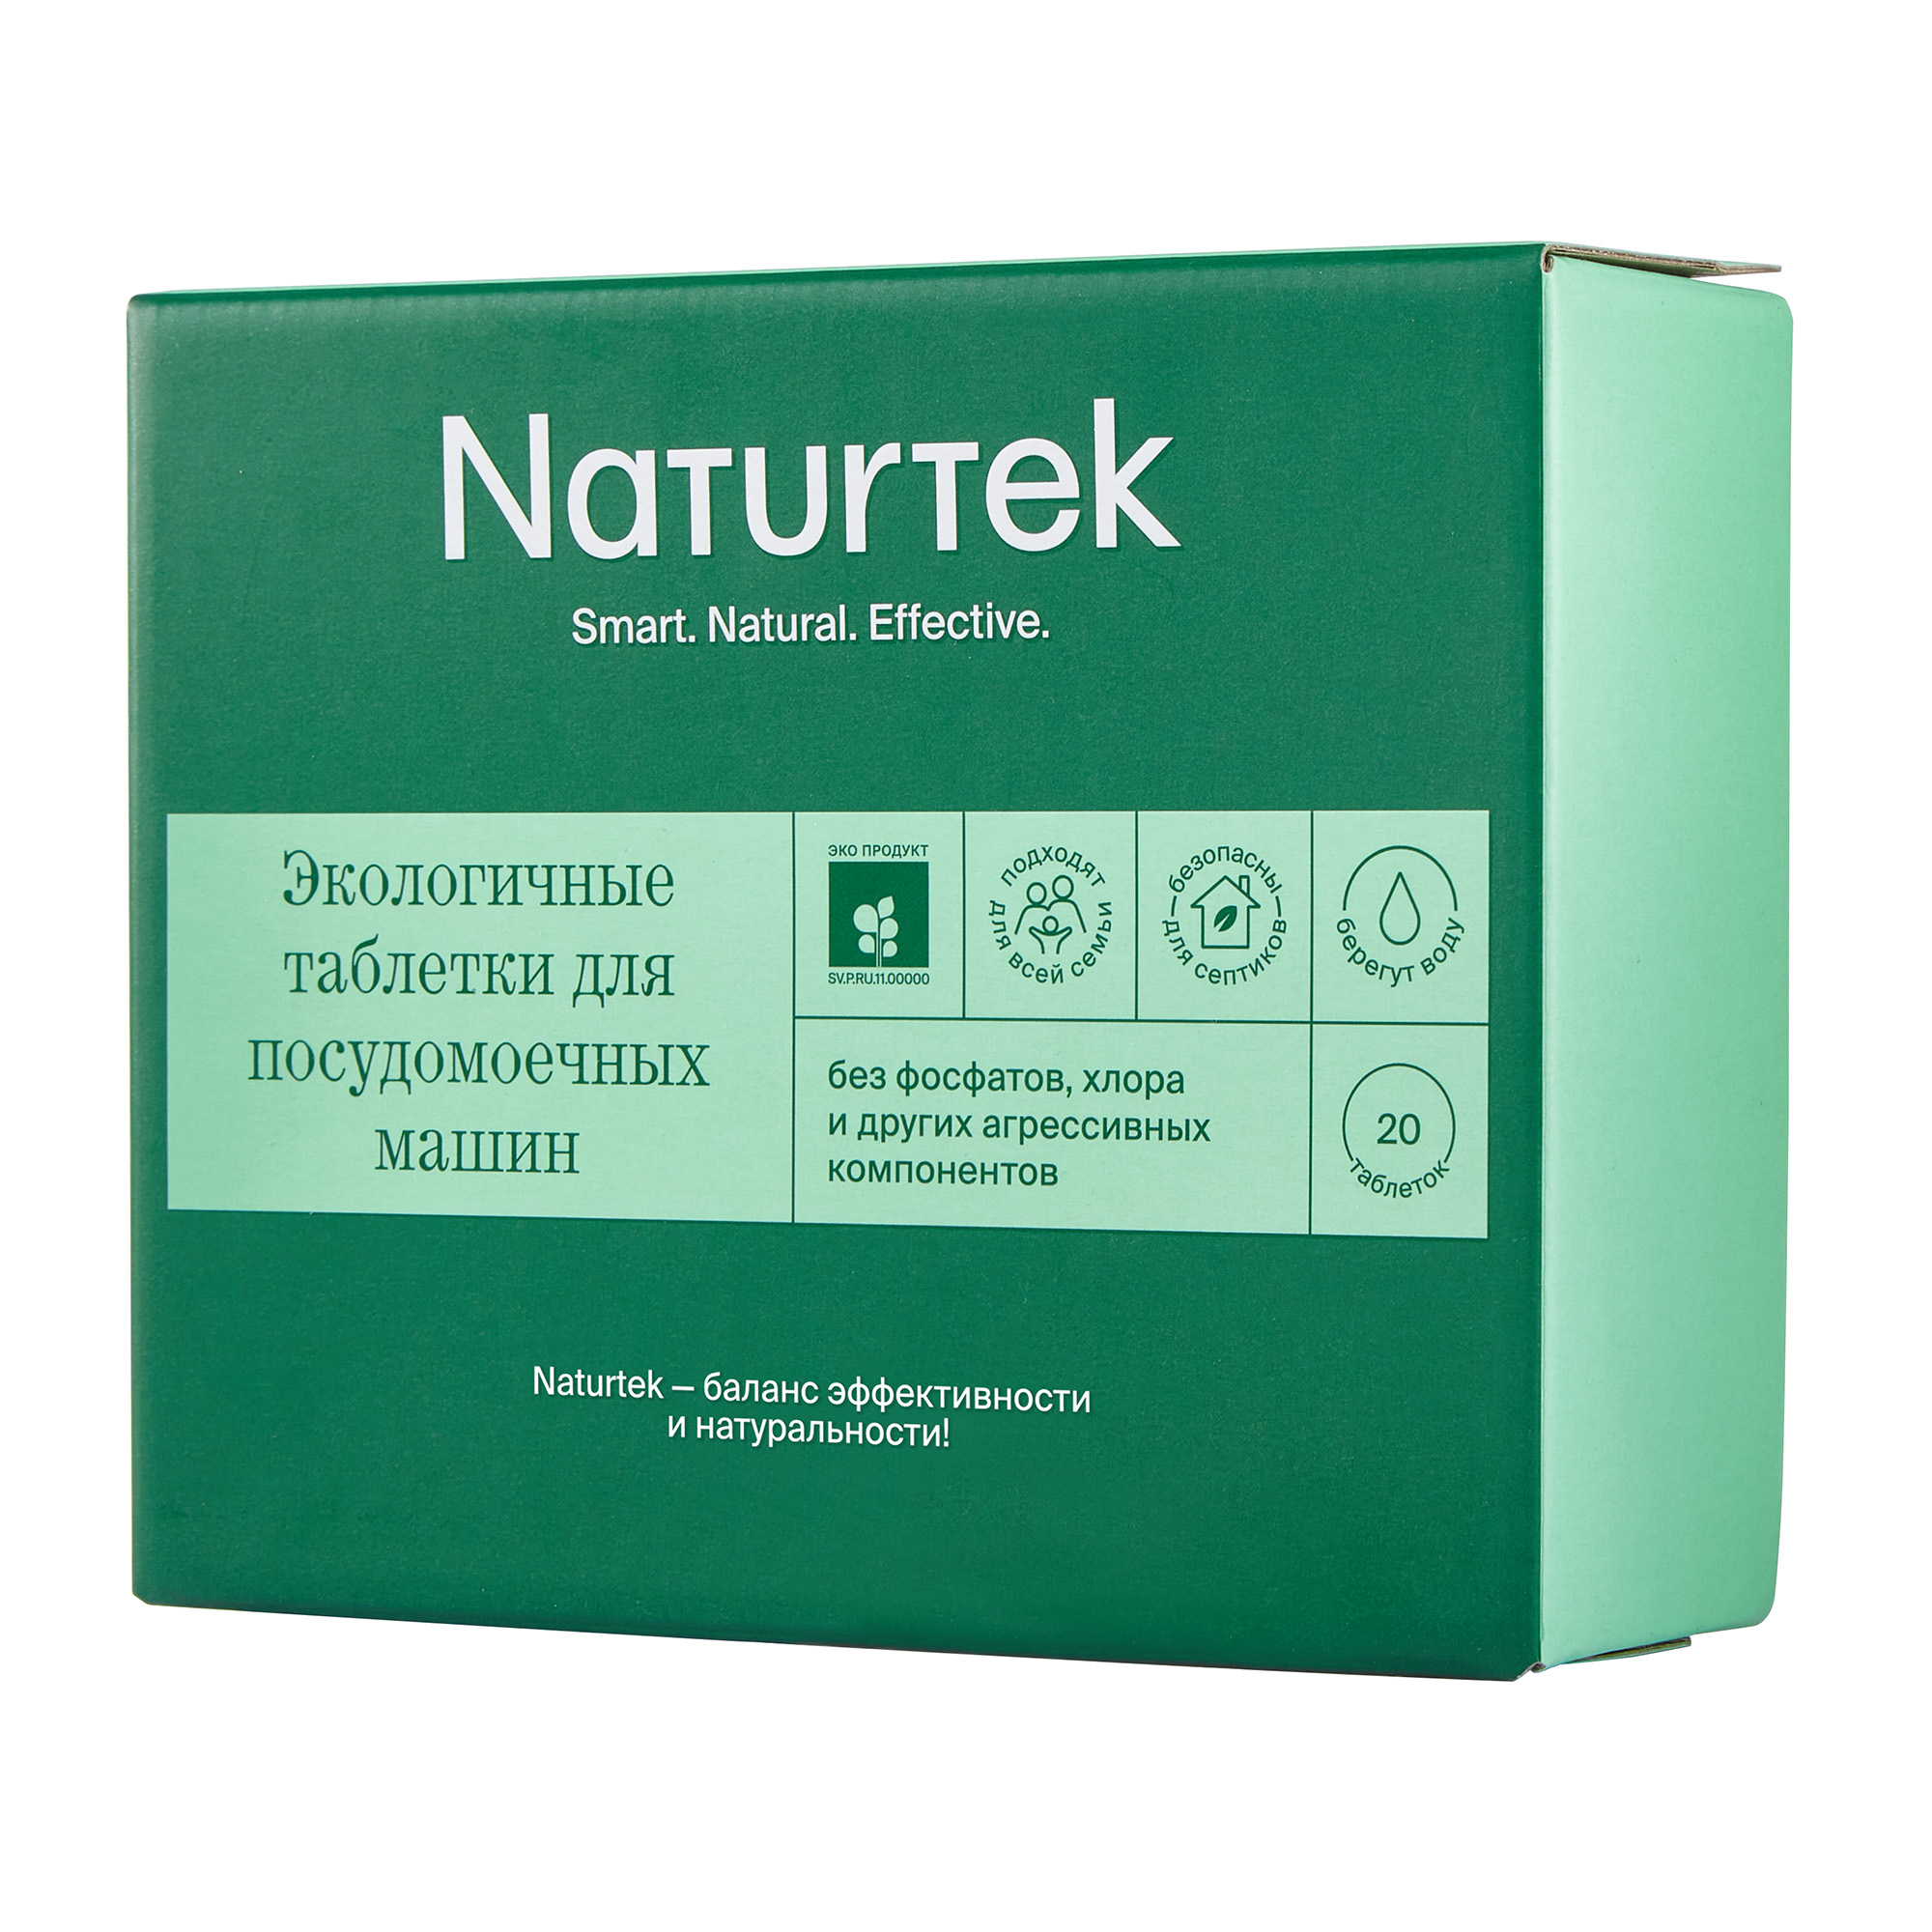 Таблетки для ПММ Naturtek 20 шт по 20 г экологичные без аромата - фото 1